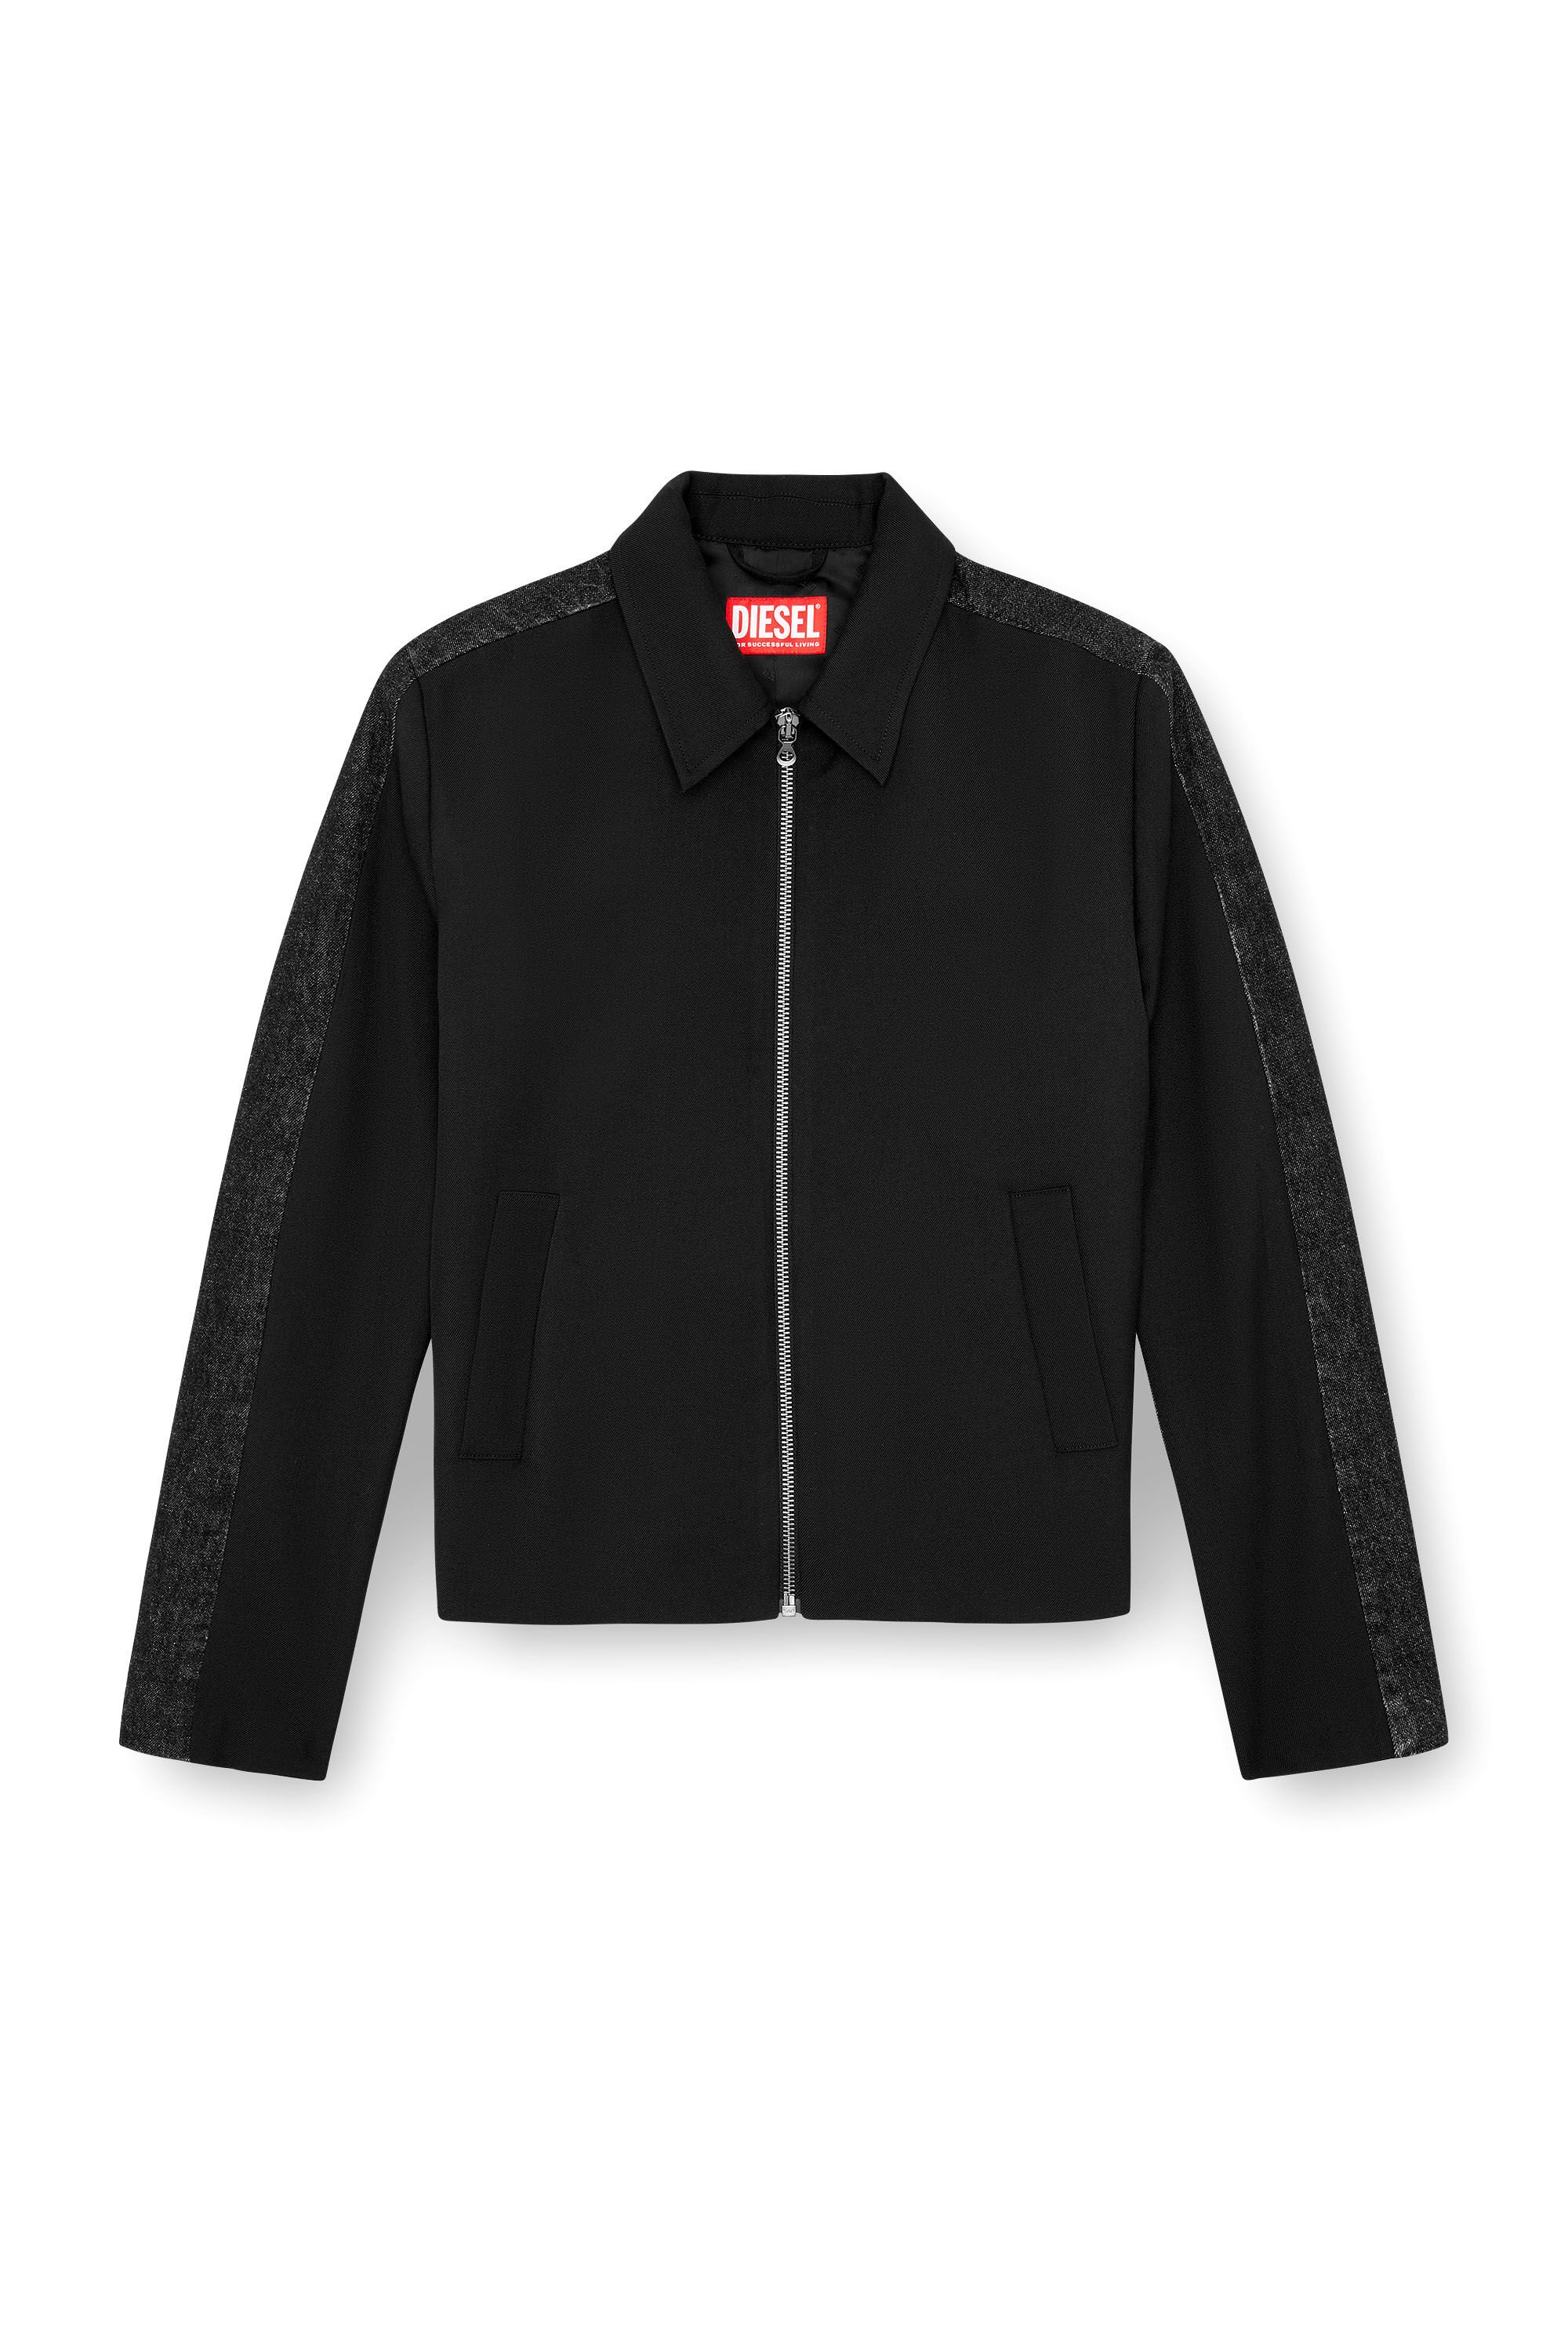 Diesel - J-RHEIN, Man Blouson jacket in wool blend and denim in Black - Image 2